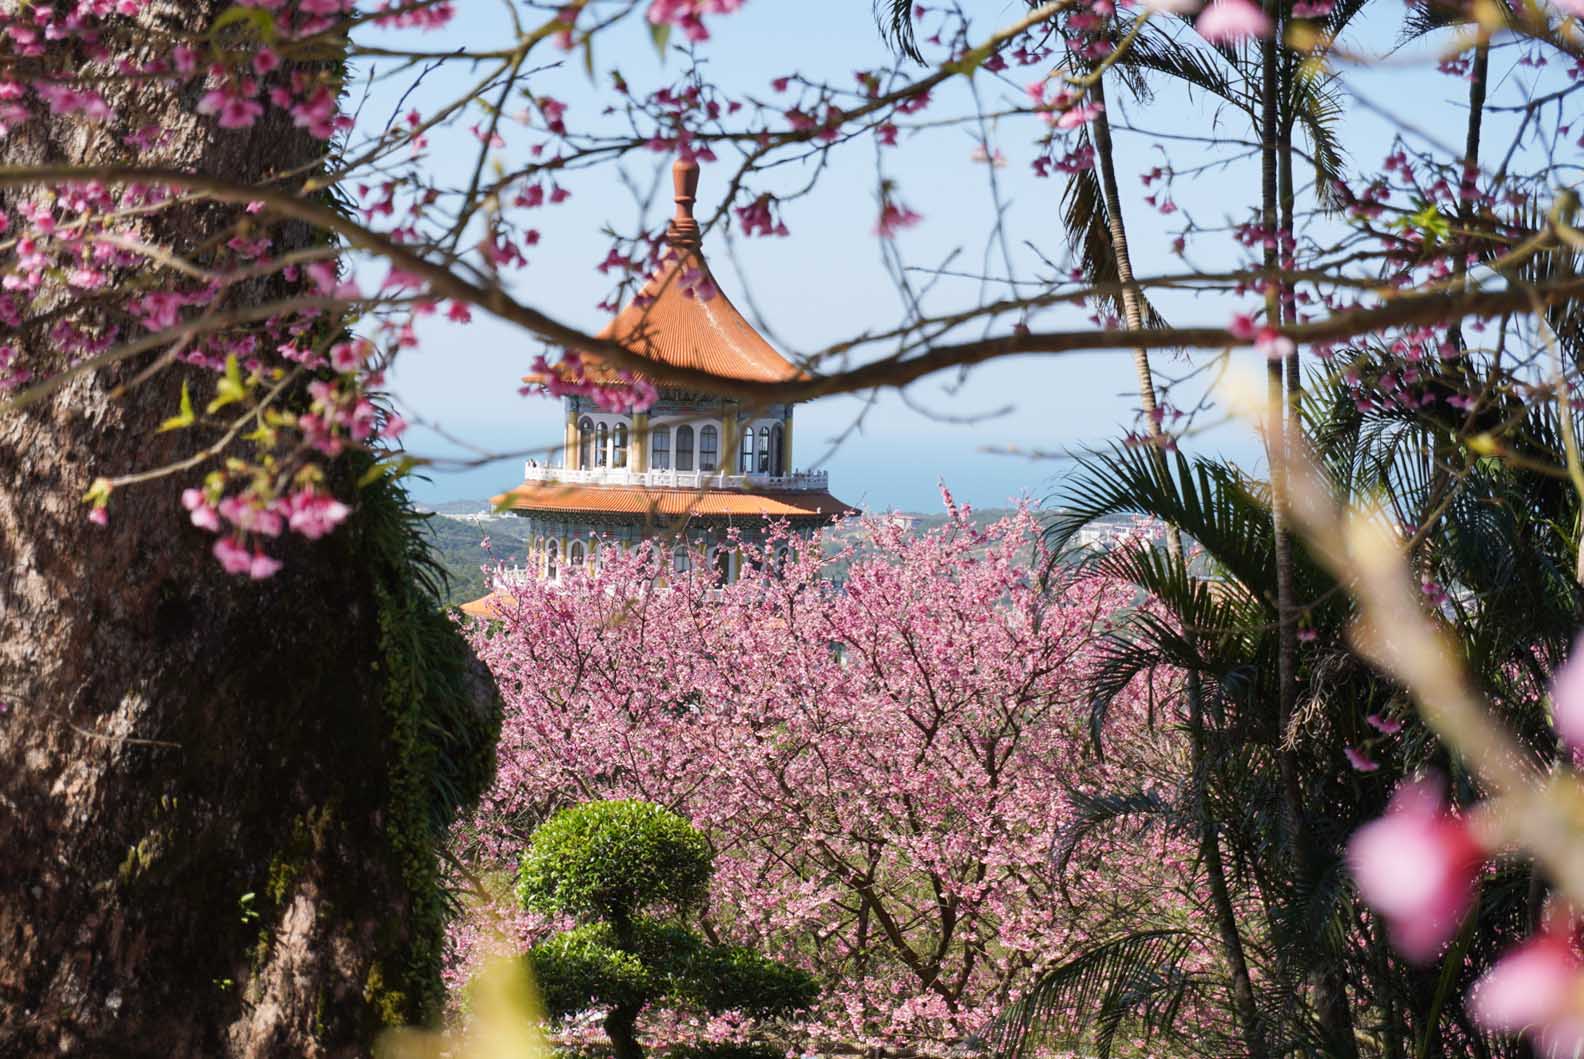 Gợi ý những điểm ngắm hoa anh đào đẹp tại Đài Loan